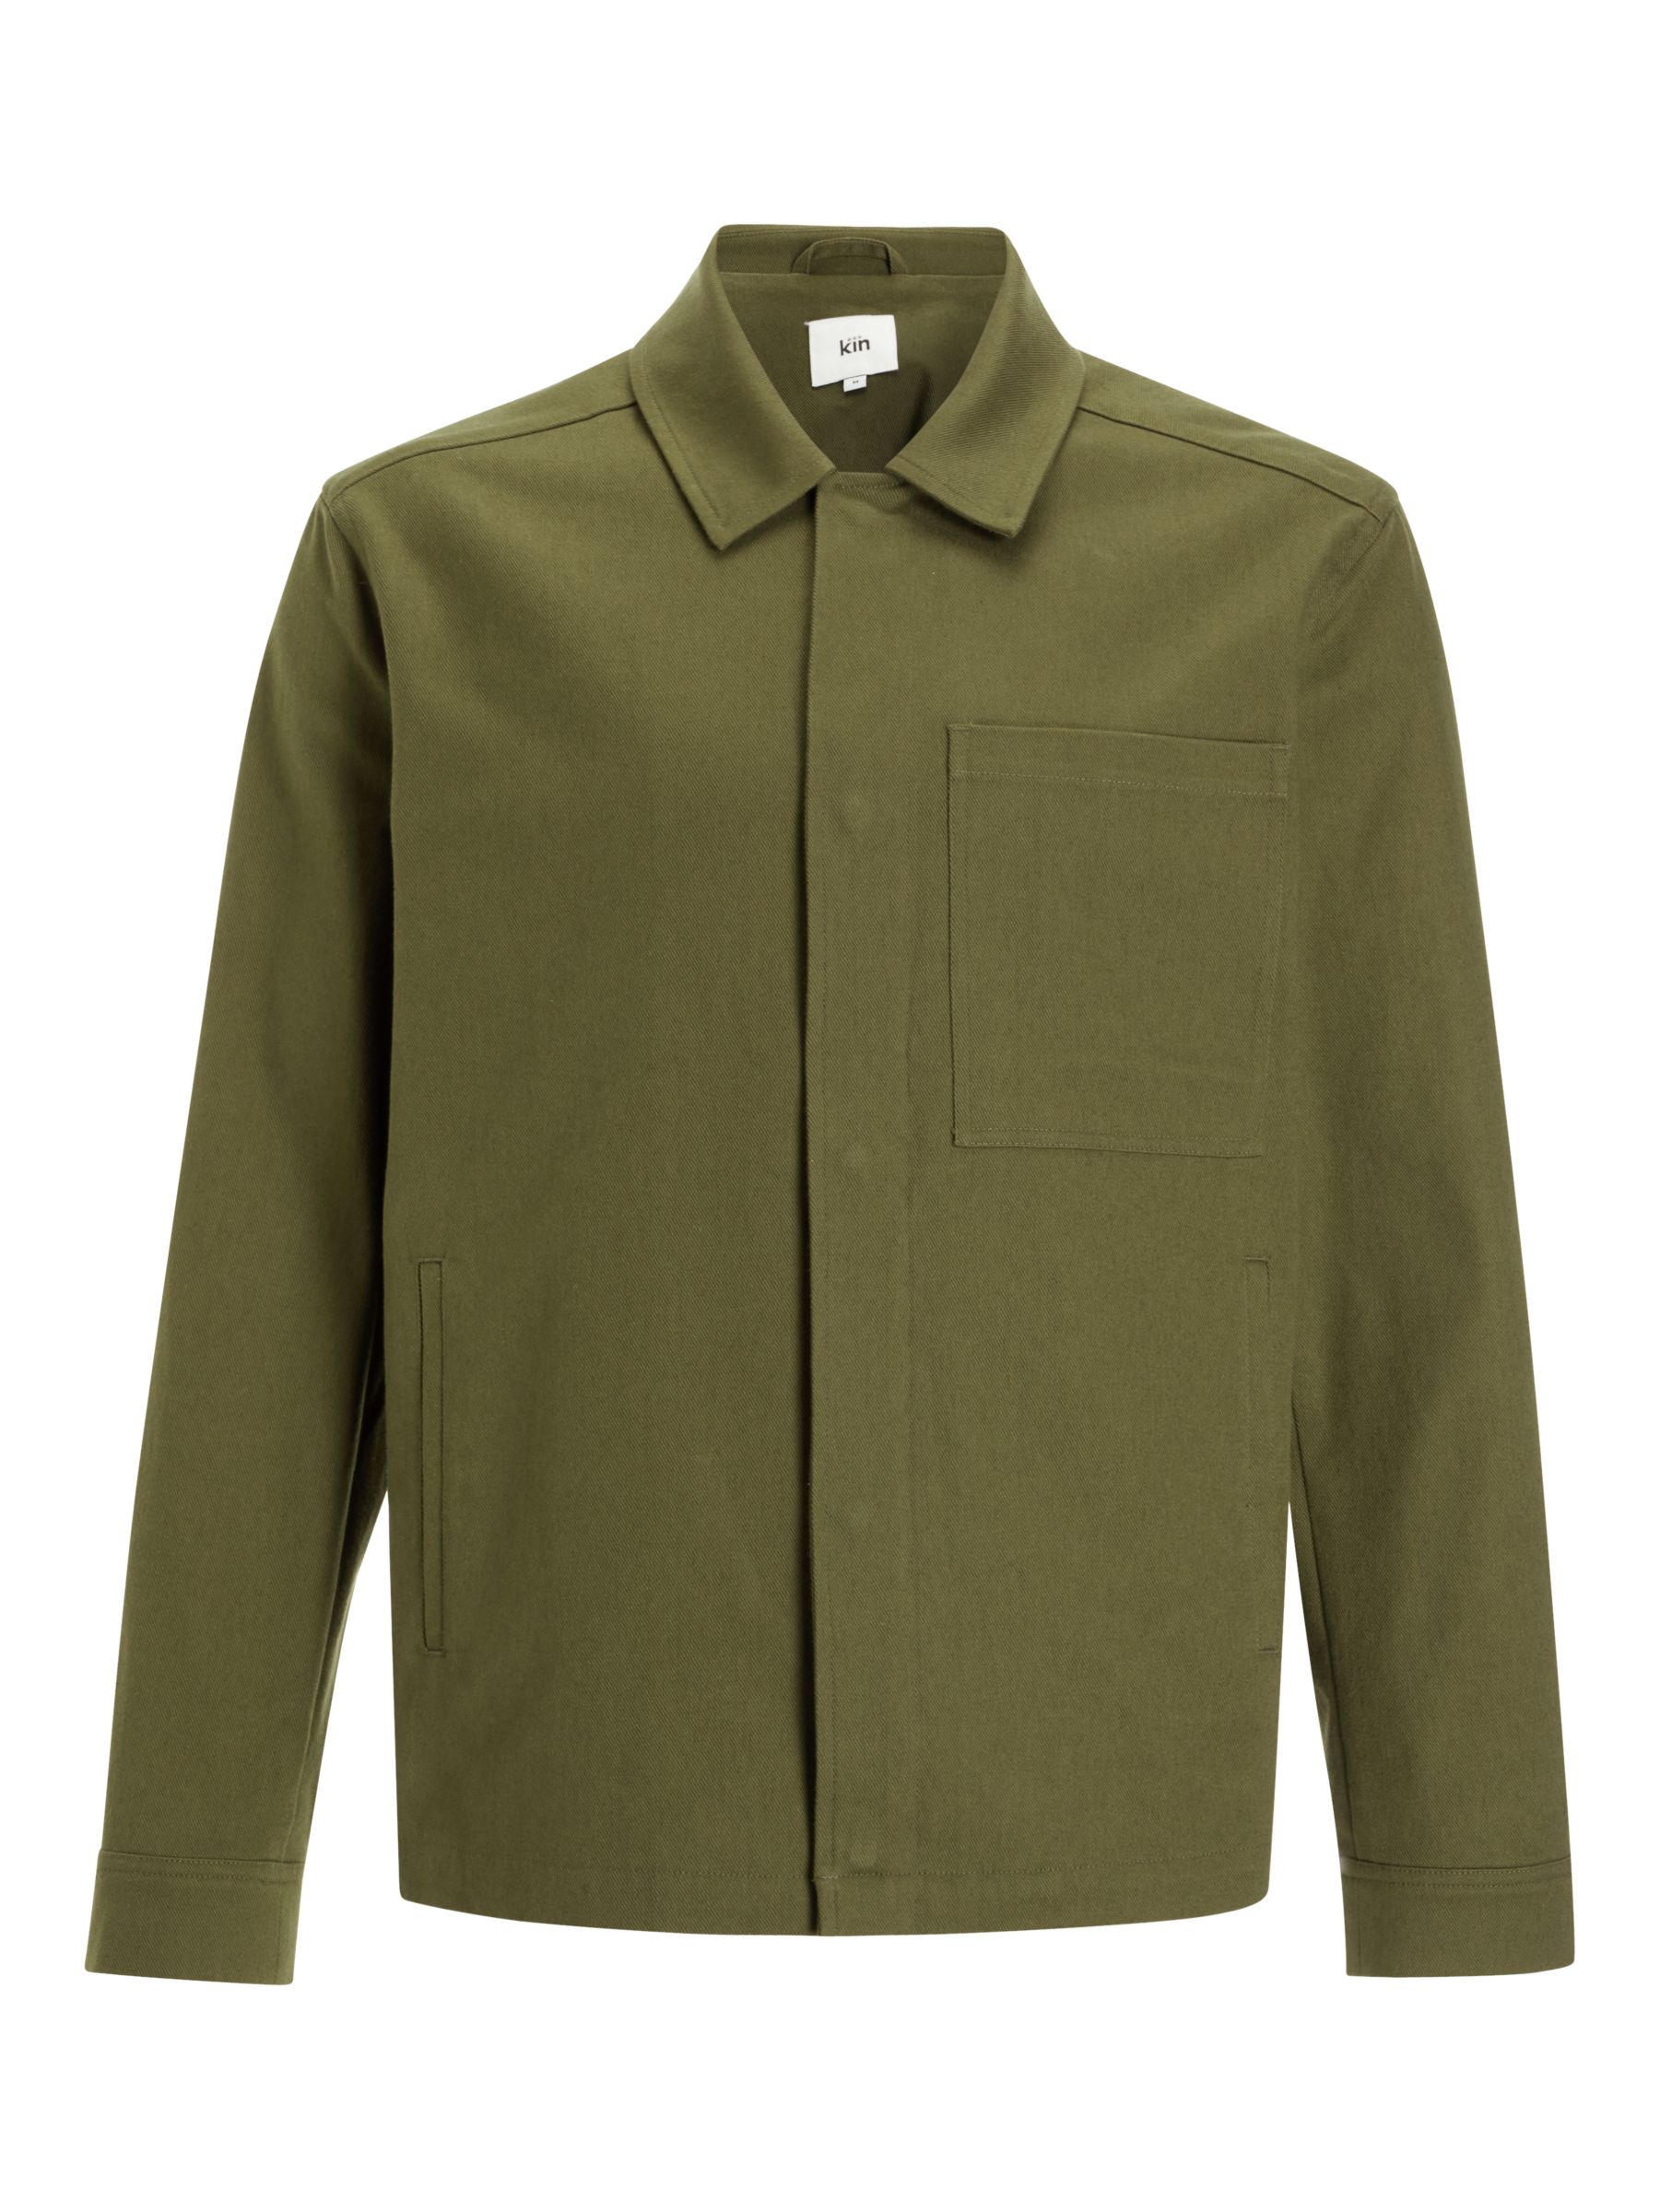 Kin Cotton Twill Jersey Harrington Jacket, Khaki